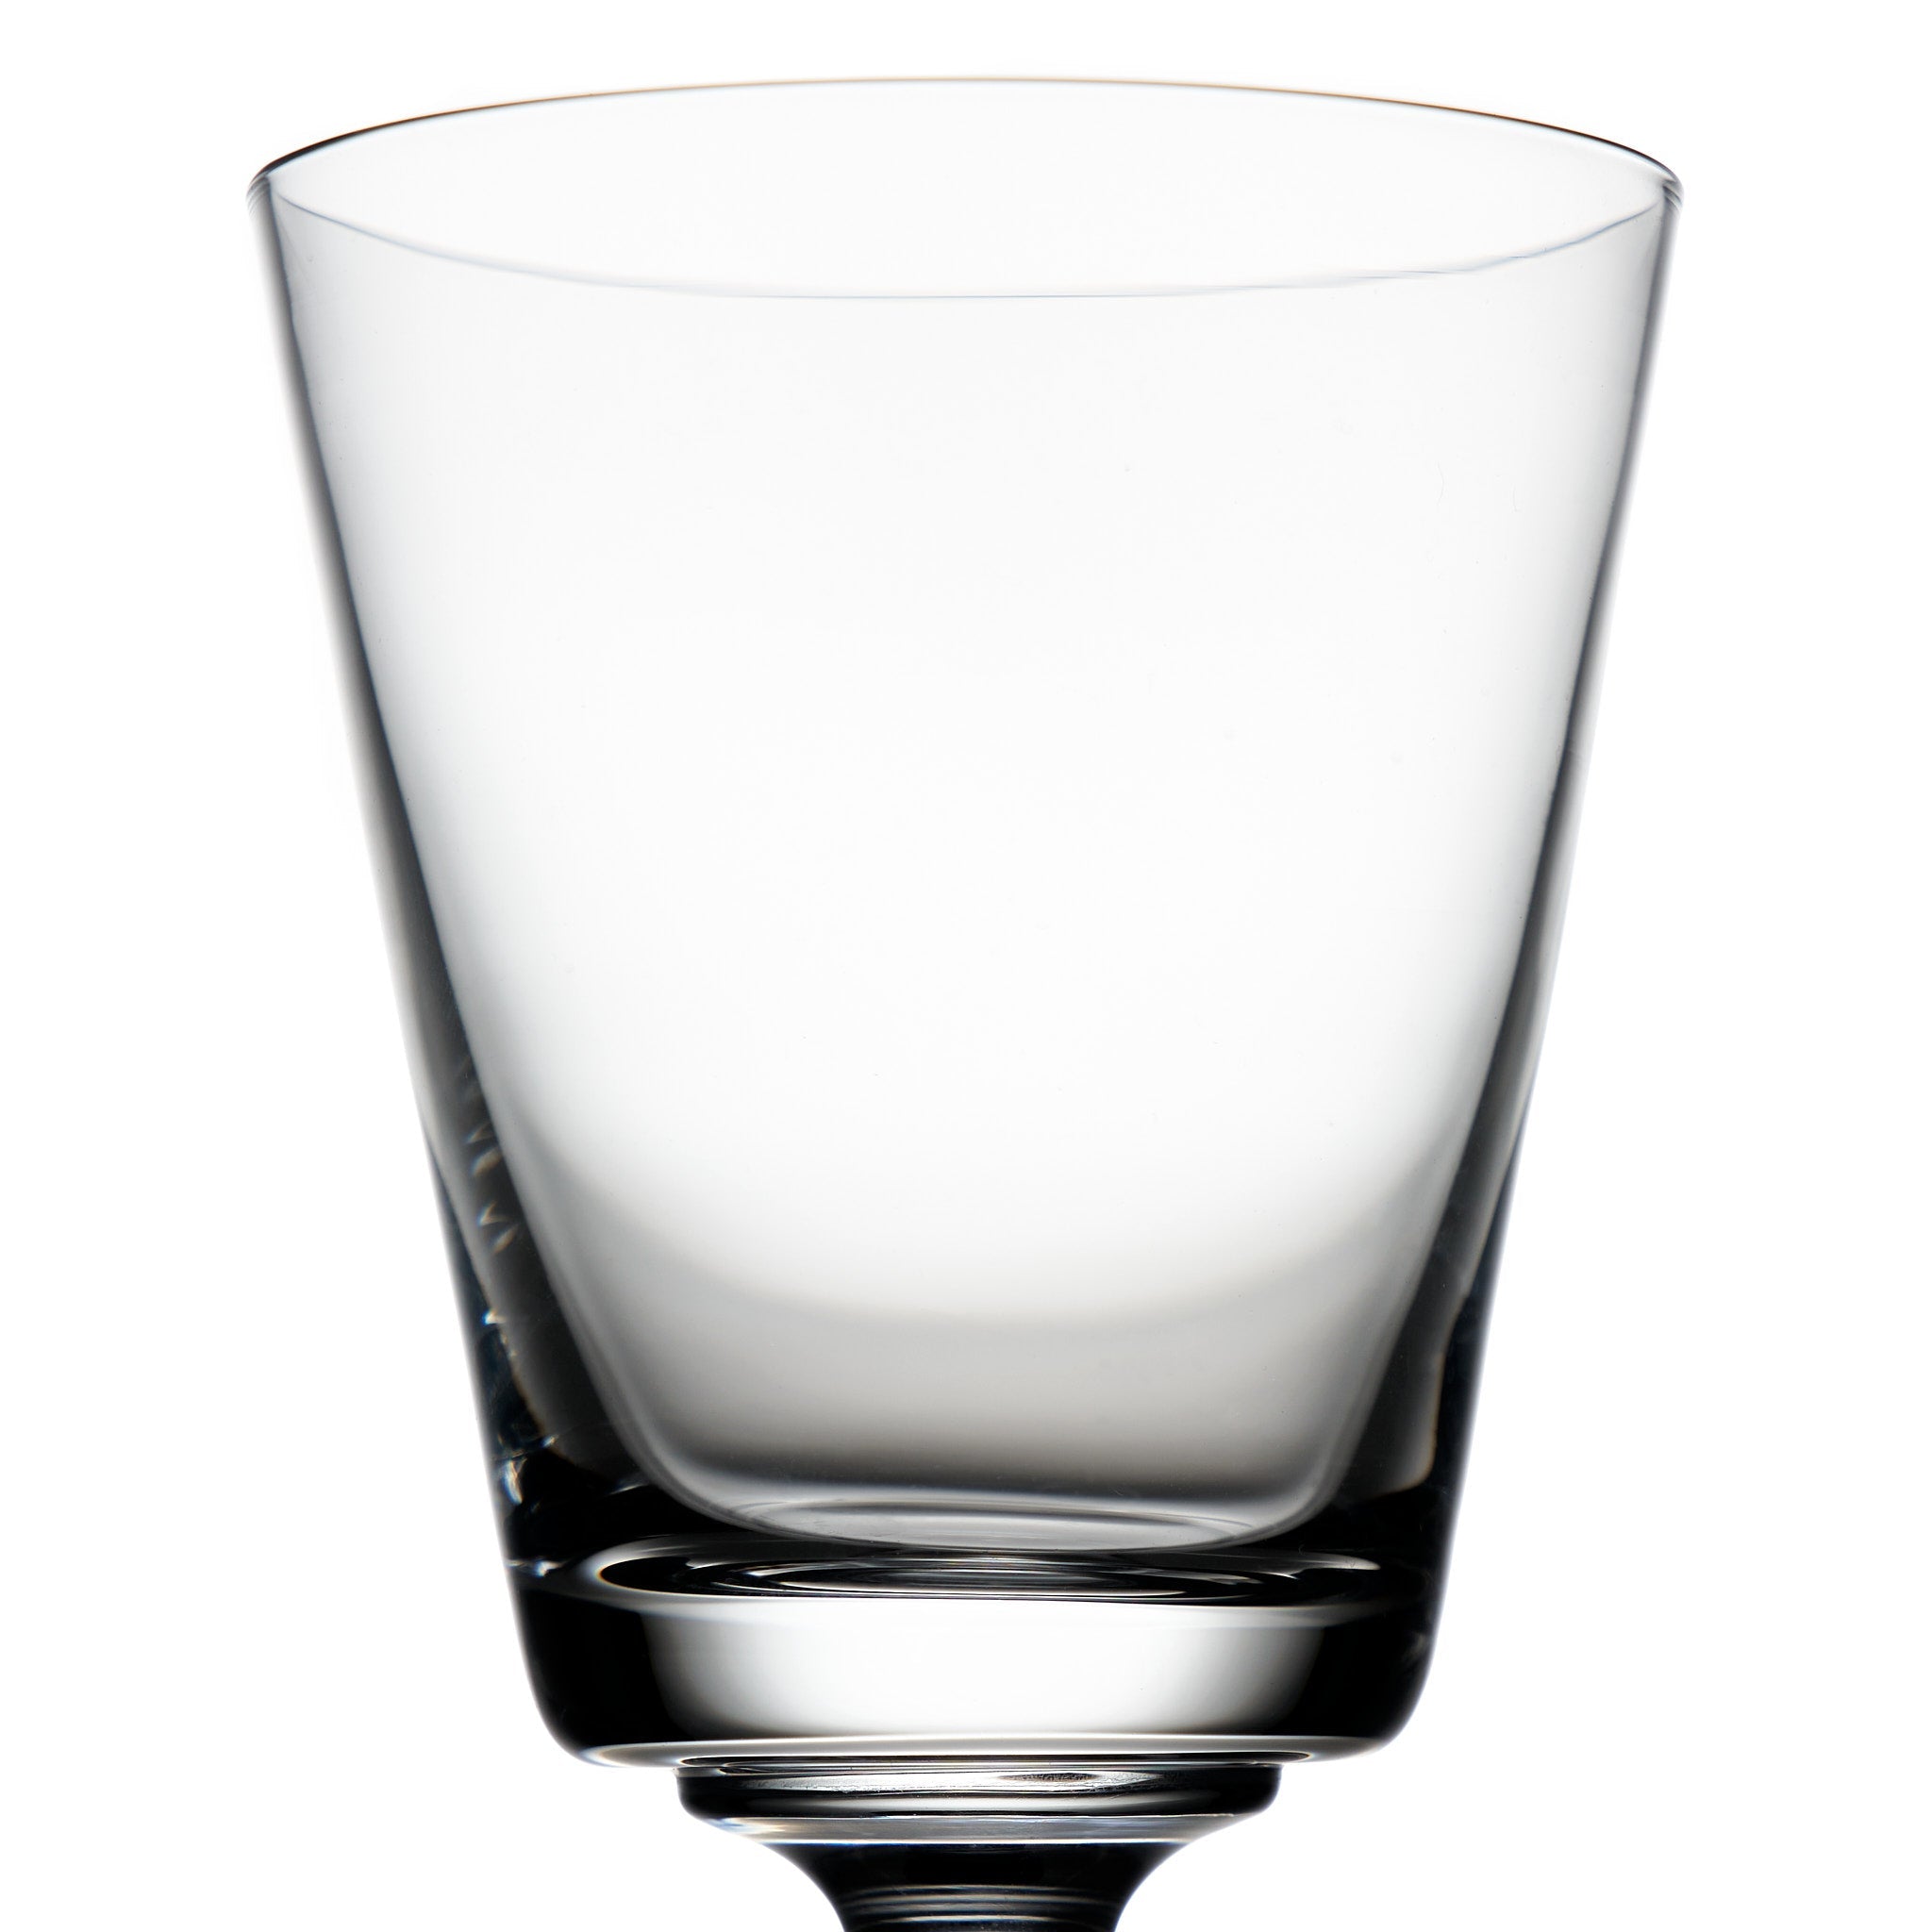 Locchi_Ginori_water_glass